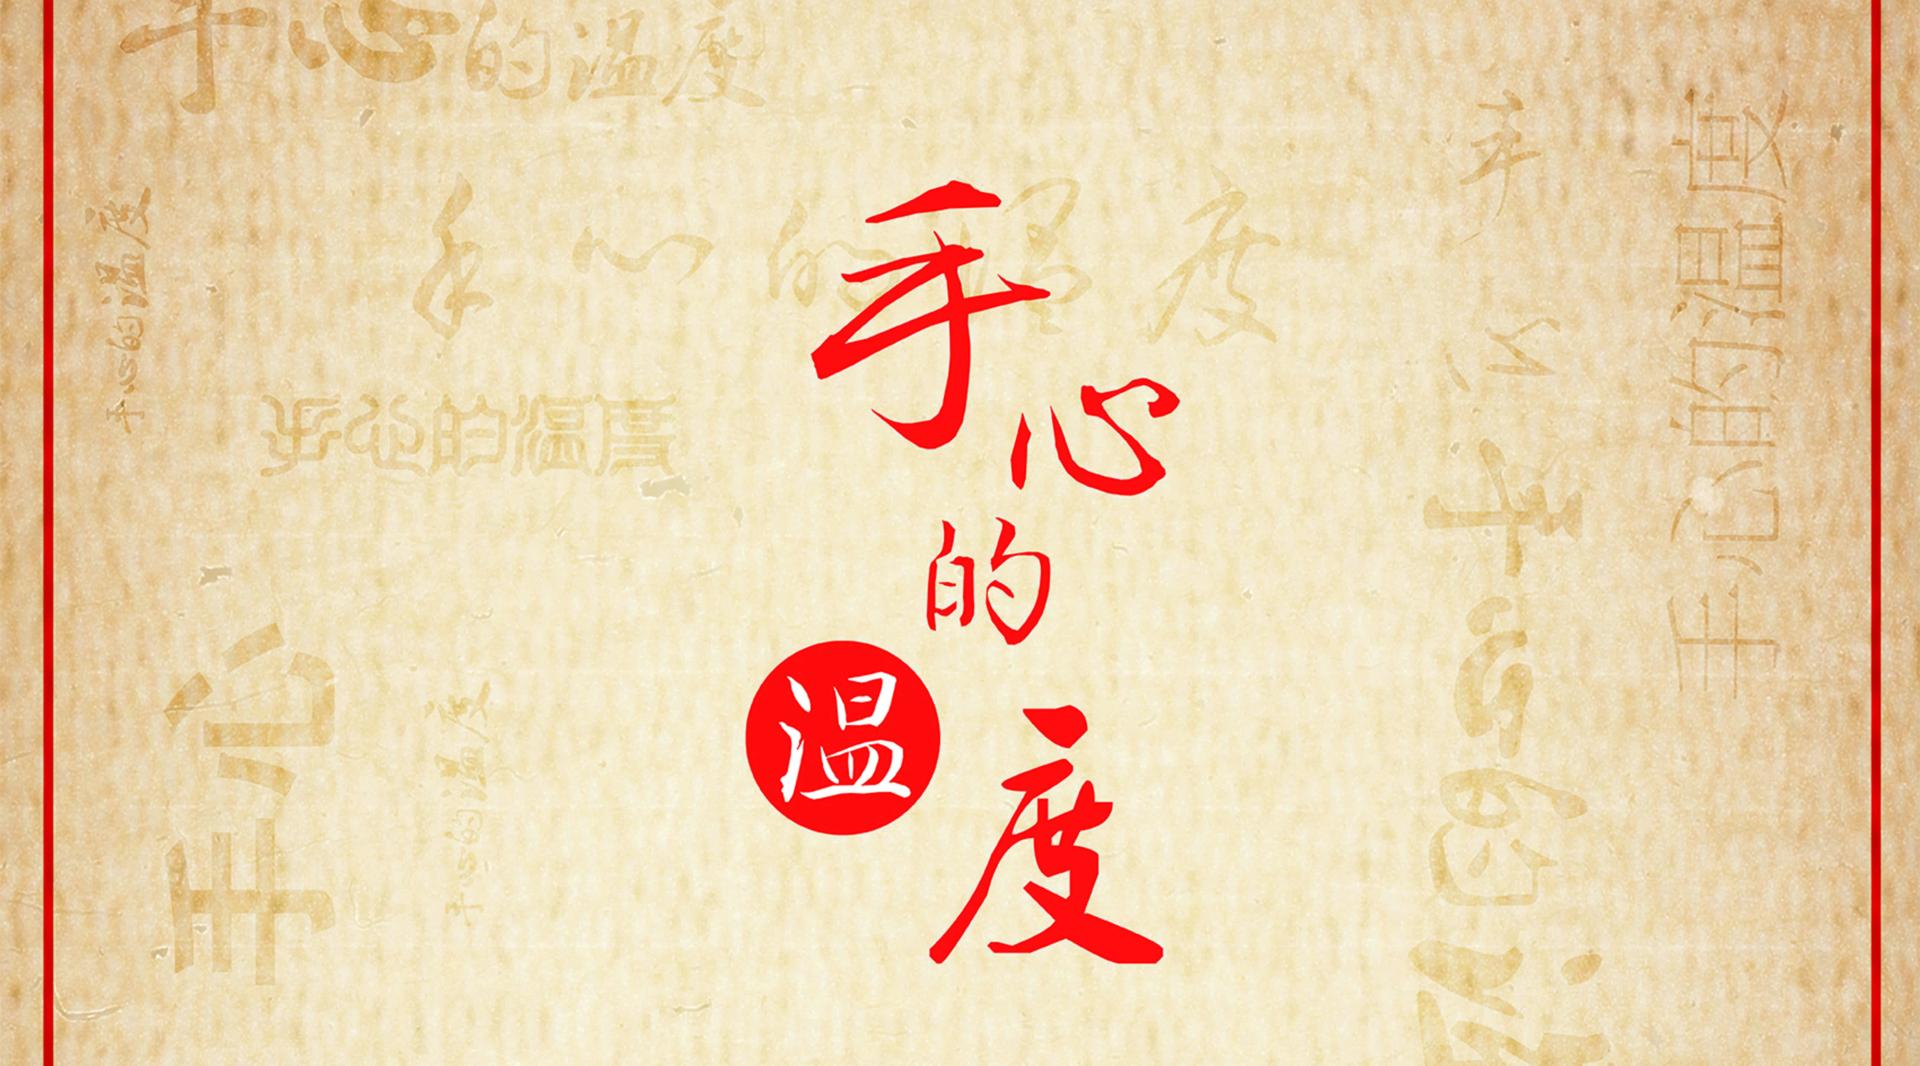 冀南传统手工艺纪录片《手心的温度》